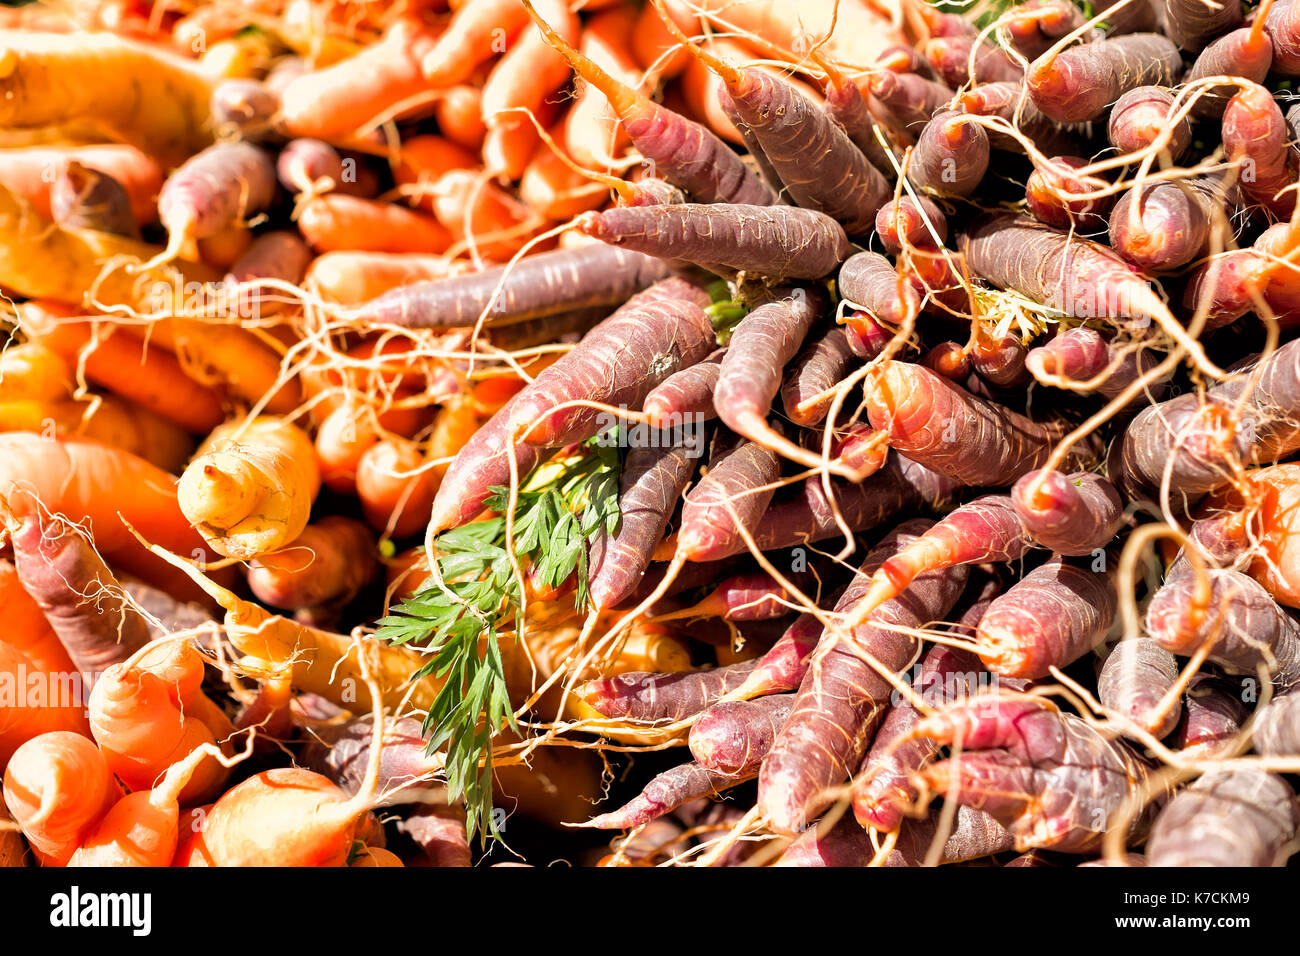 Les carottes de différentes couleurs à un marché de producteurs Banque D'Images